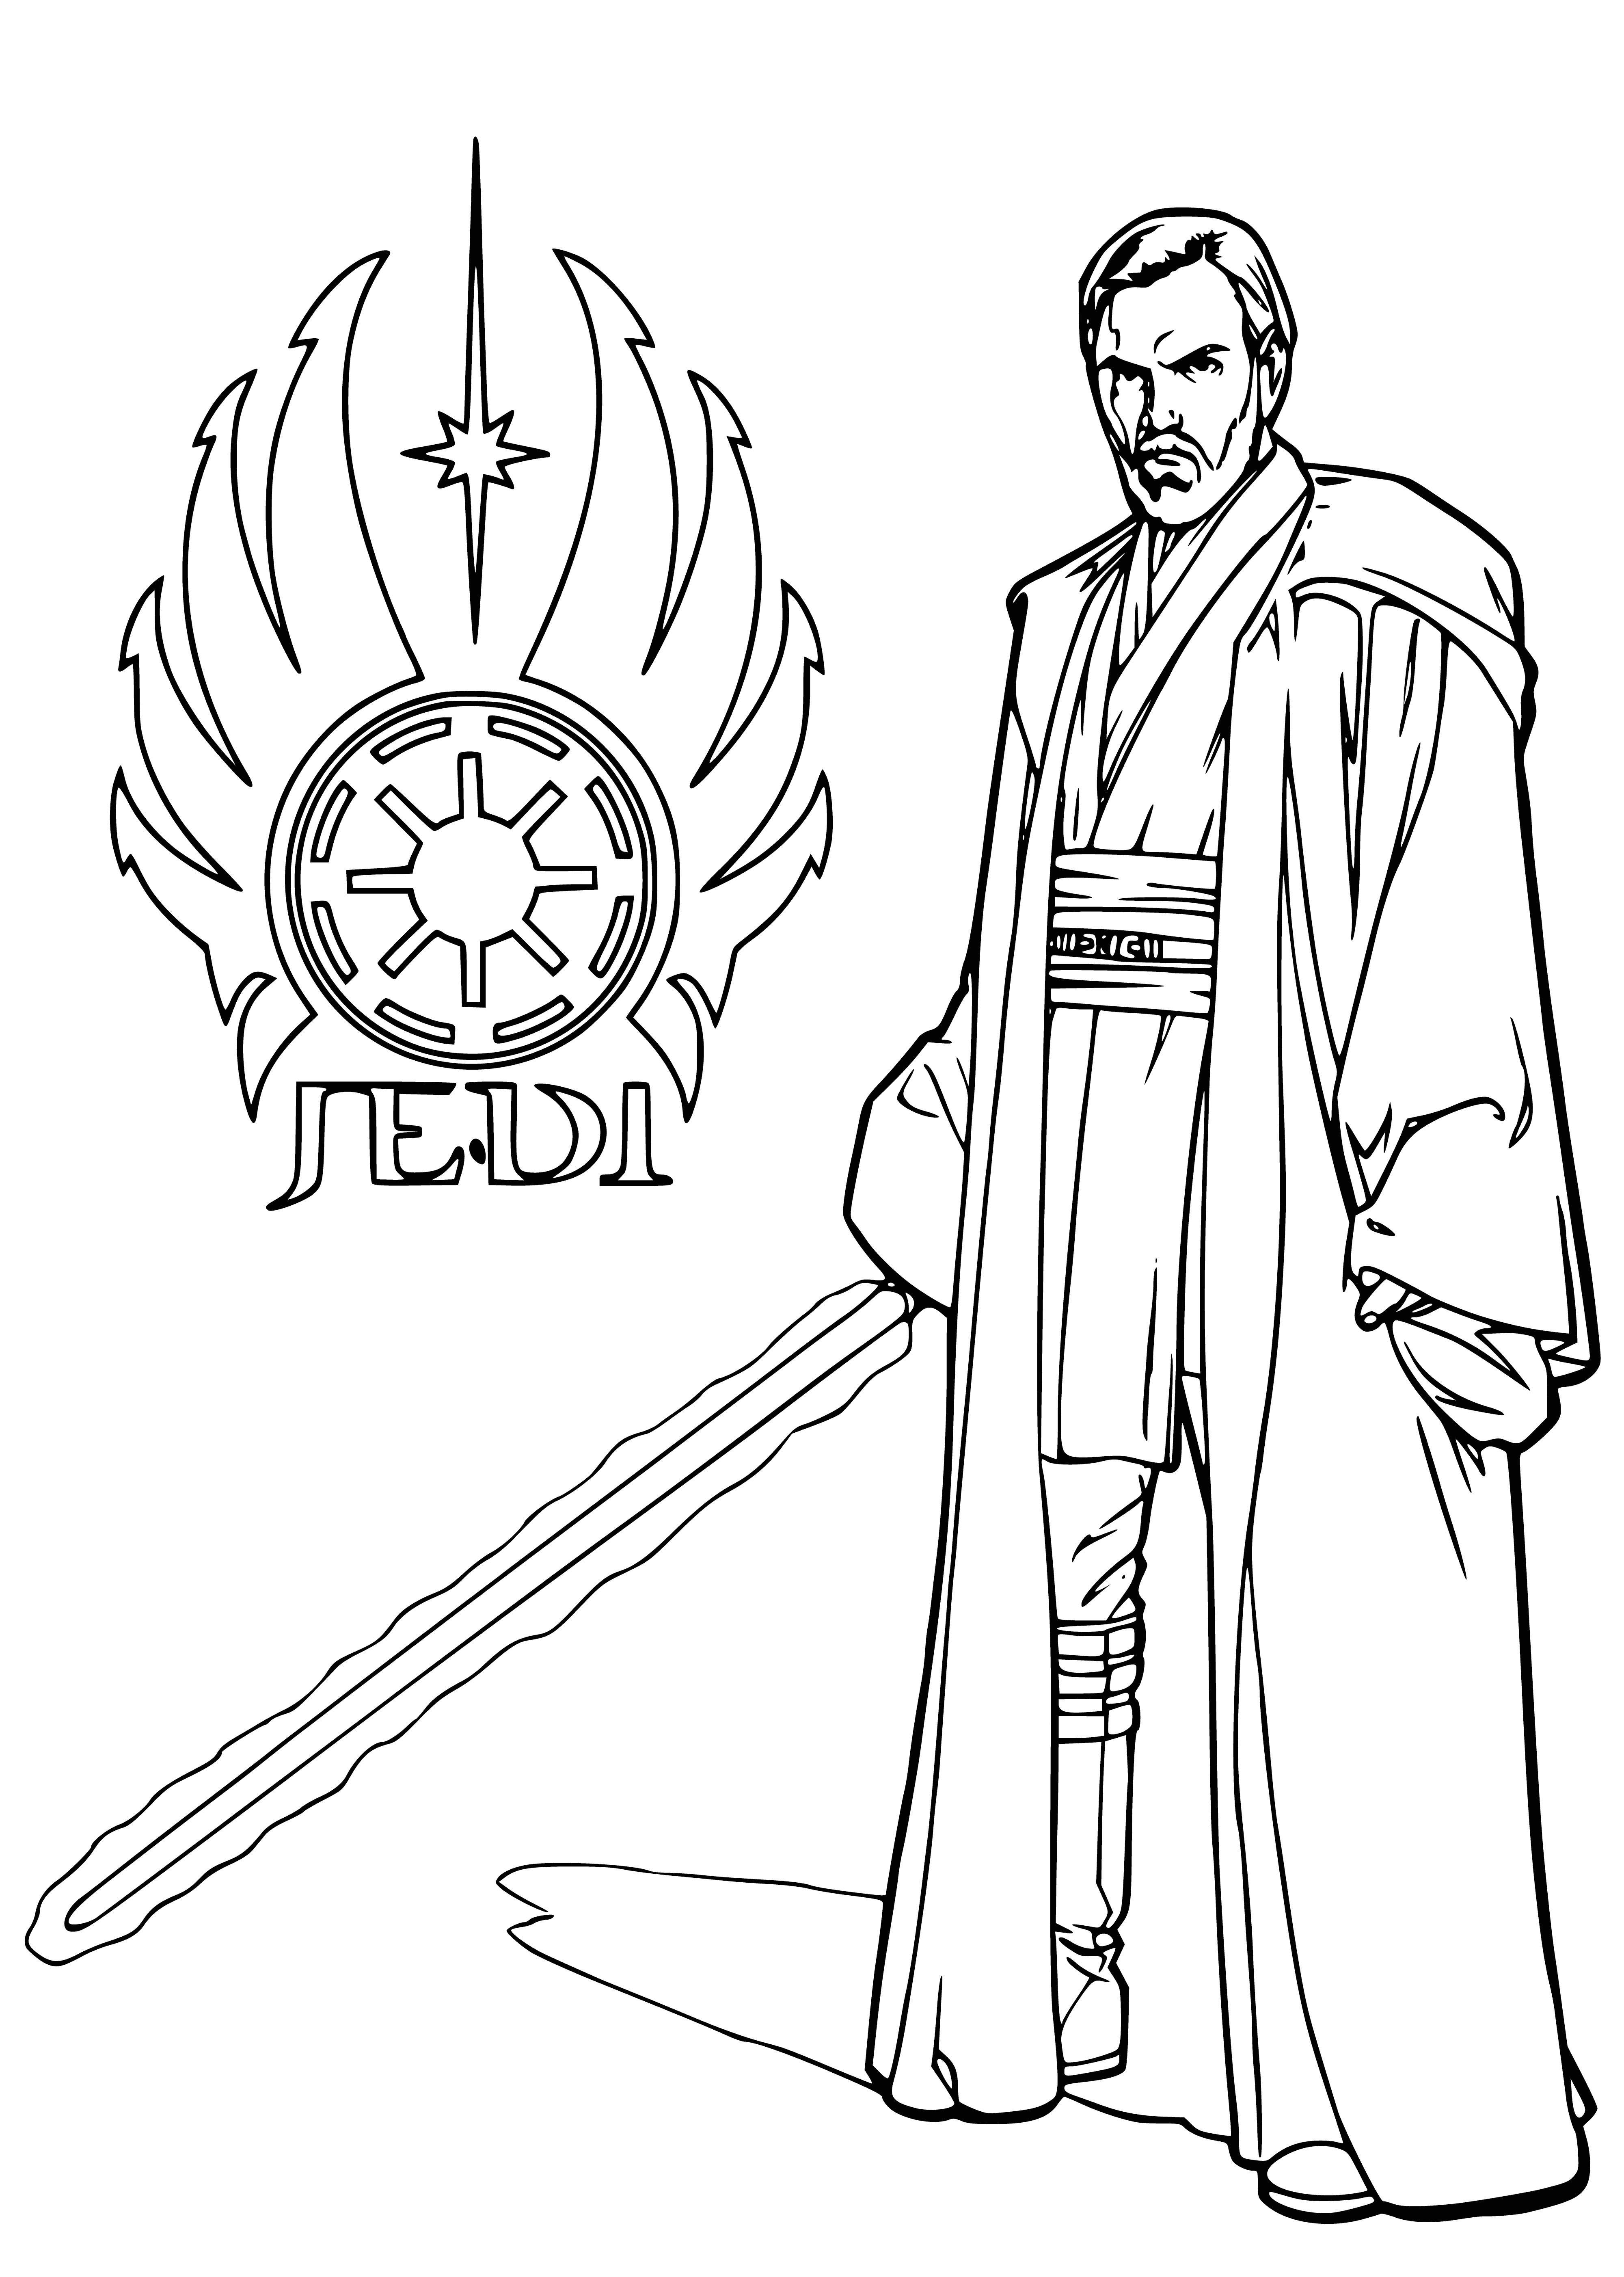 Obi-Wan Kenobi coloring page